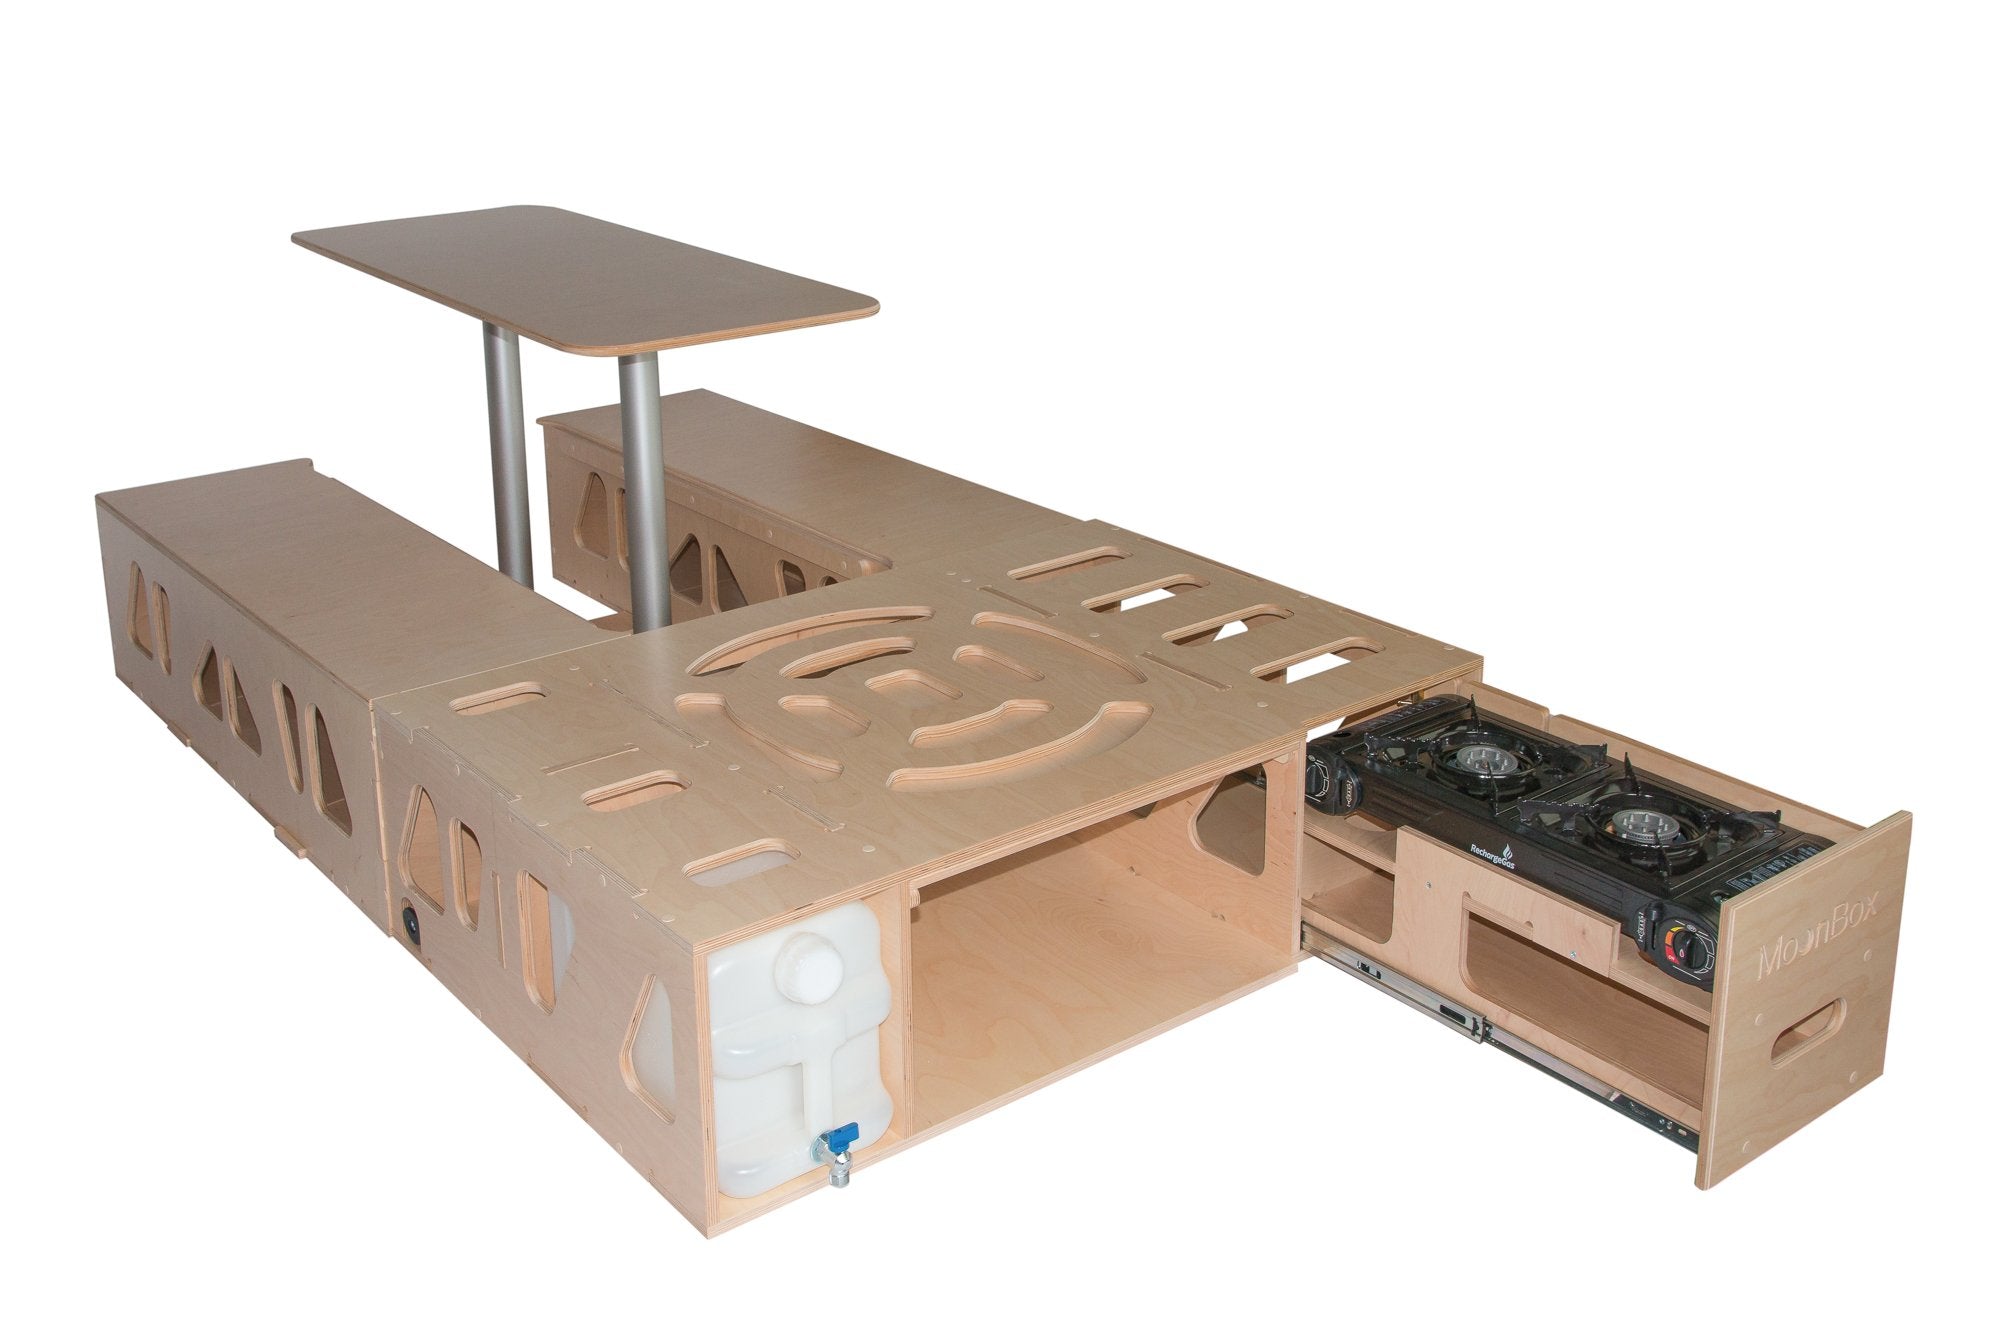 Moonbox Campingbox mit Tisch Van/Bus 119cm UV-Lack